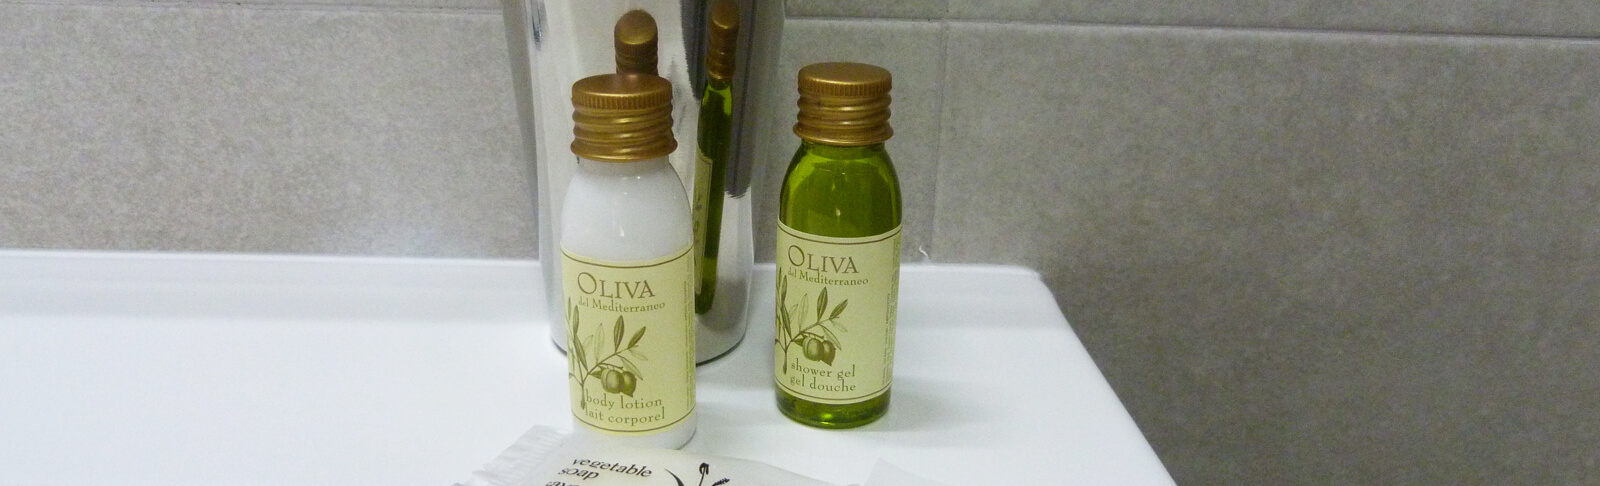 Artisanale olijfolie op de badkamer